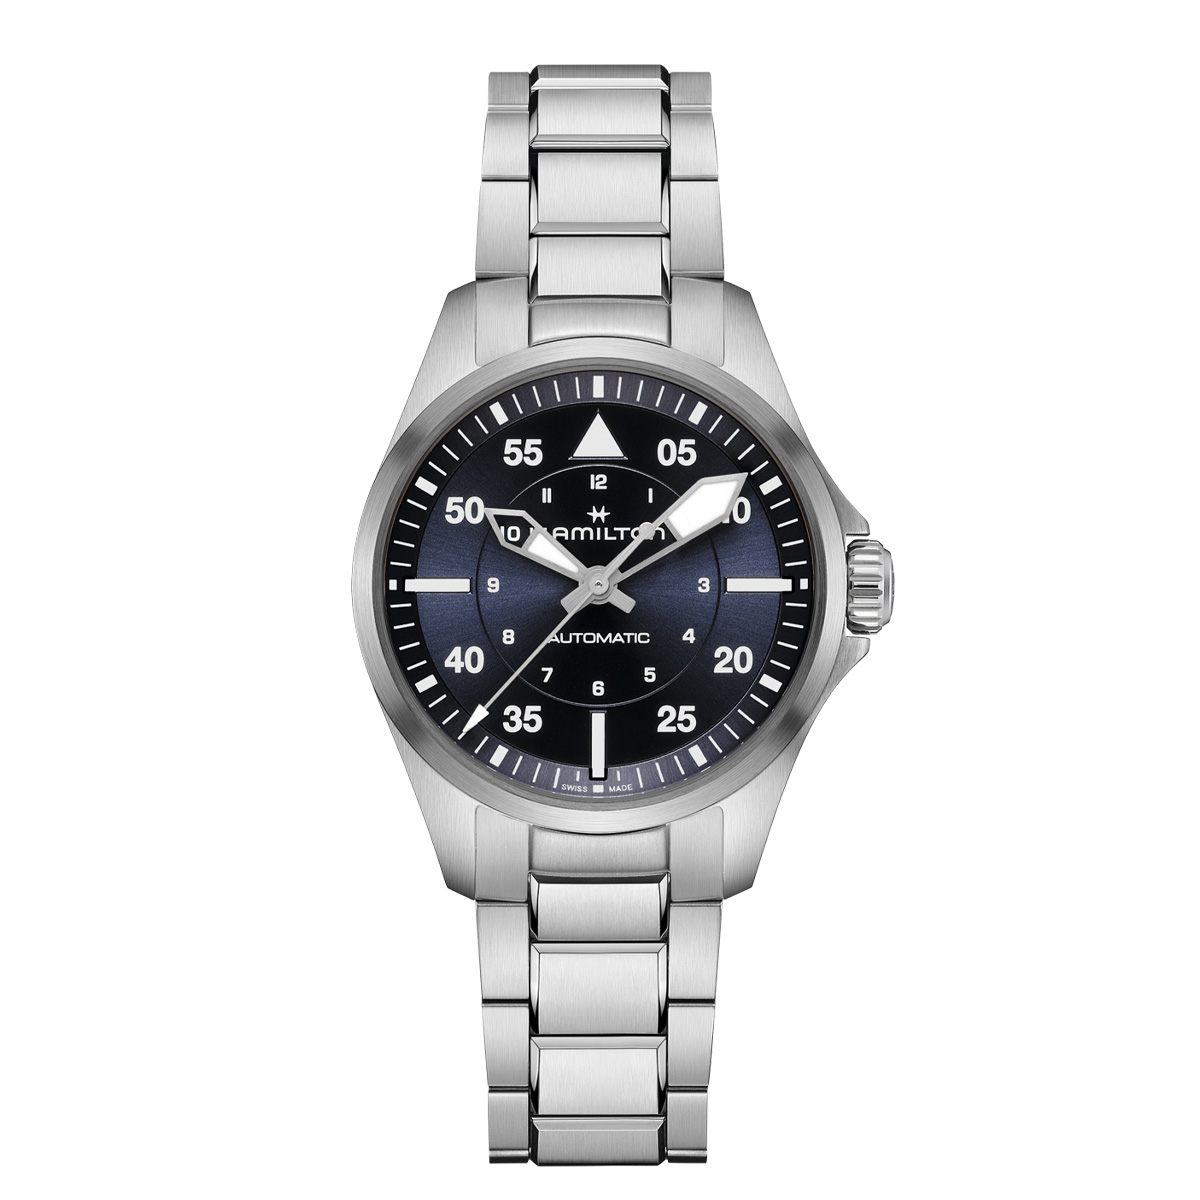 楽天市場】ハミルトン 公式 腕時計 HAMILTON Khaki Aviation Khaki